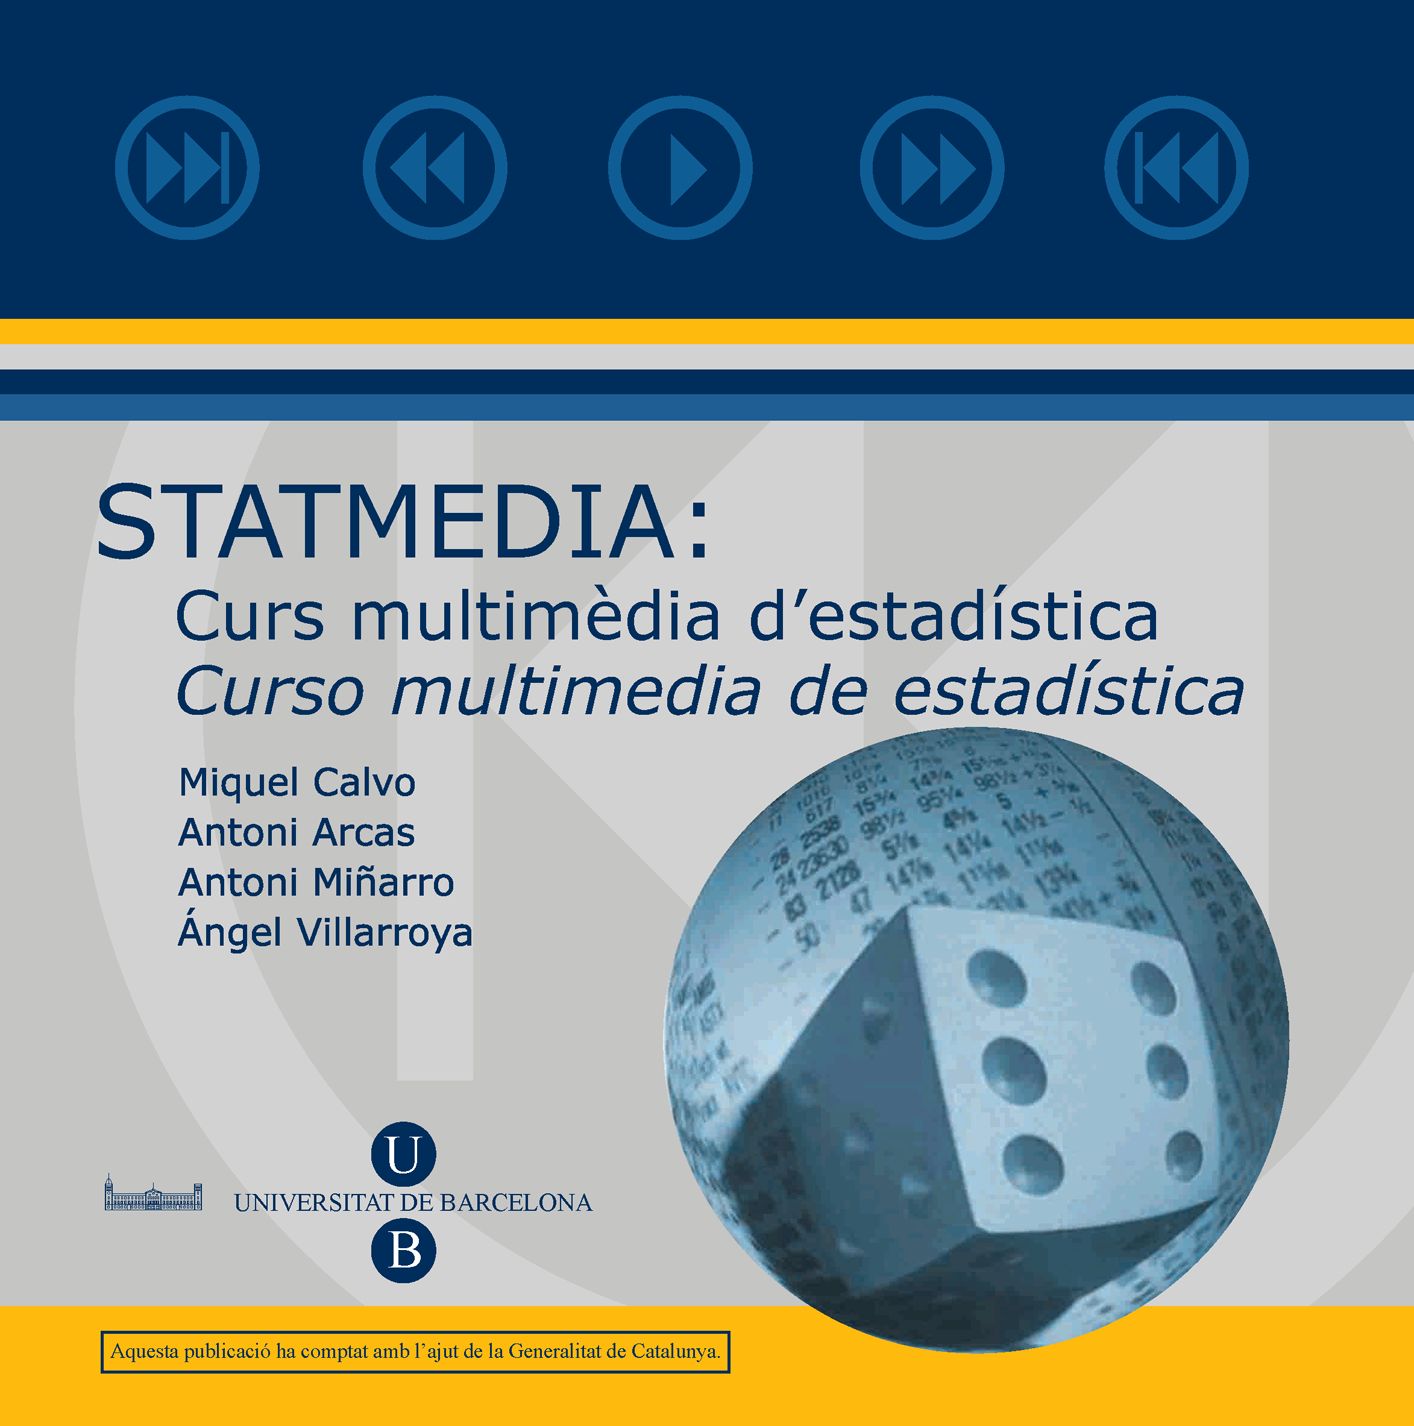 Statmedia: Curs multimèdia d'estadística / Curso multimedia de estadística (CD-ROM) 2009 (9788447533329)